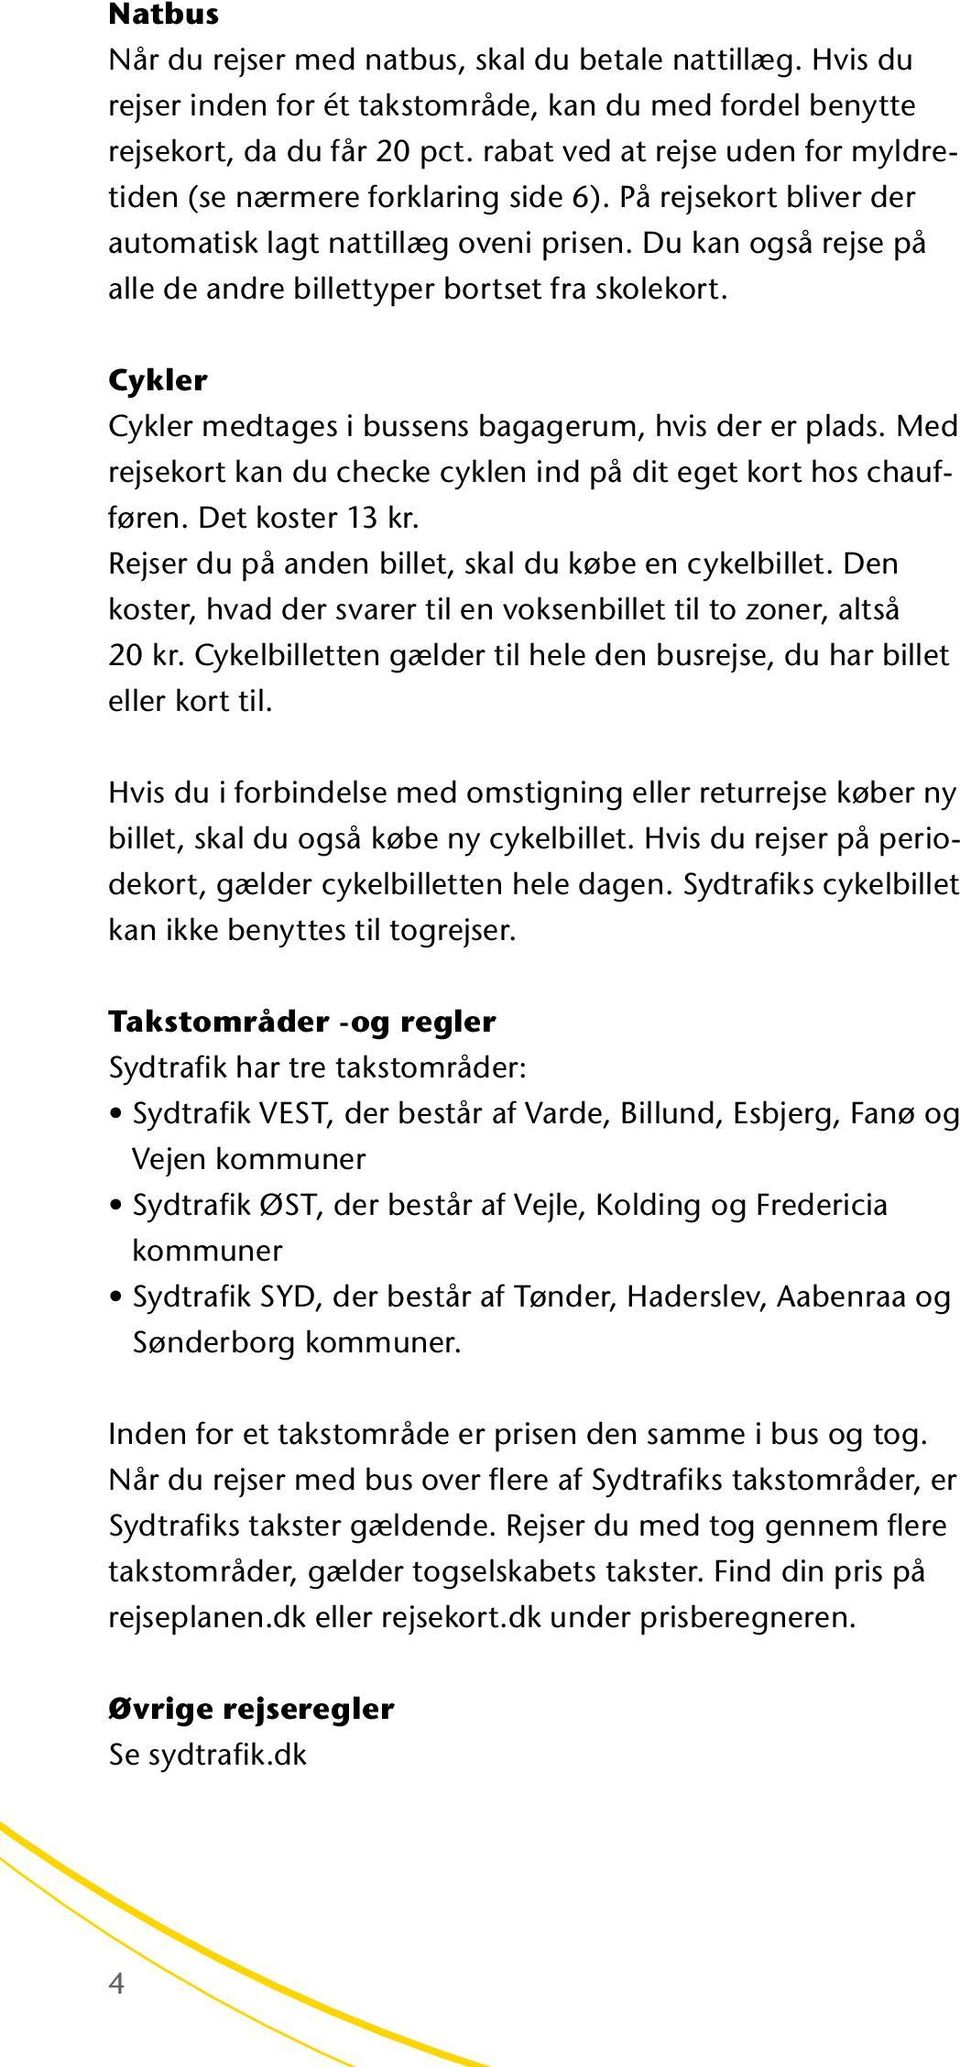 SYDTRAFIKS TAKSTER GÆLDER FRA DEN 19. JANUAR - PDF Free Download